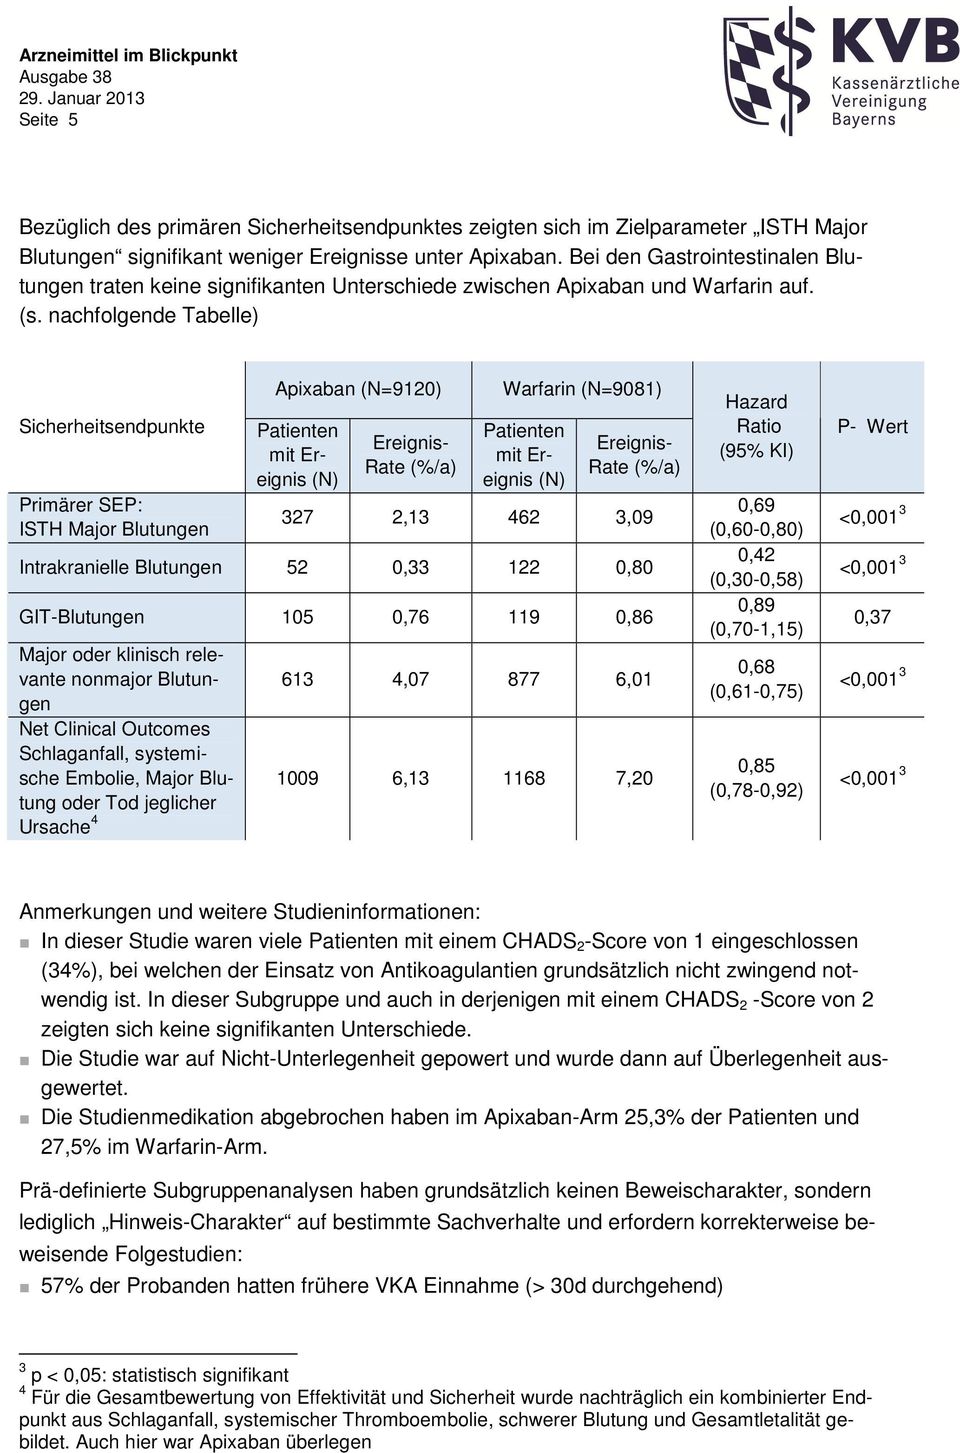 nachfolgende Tabelle) Sicherheitsendpunkte Primärer SEP: ISTH Major Blutungen Apixaban (N=9120) Rate (%/a) Warfarin (N=9081) Rate (%/a) 327 2,13 462 3,09 Intrakranielle Blutungen 52 0,33 122 0,80